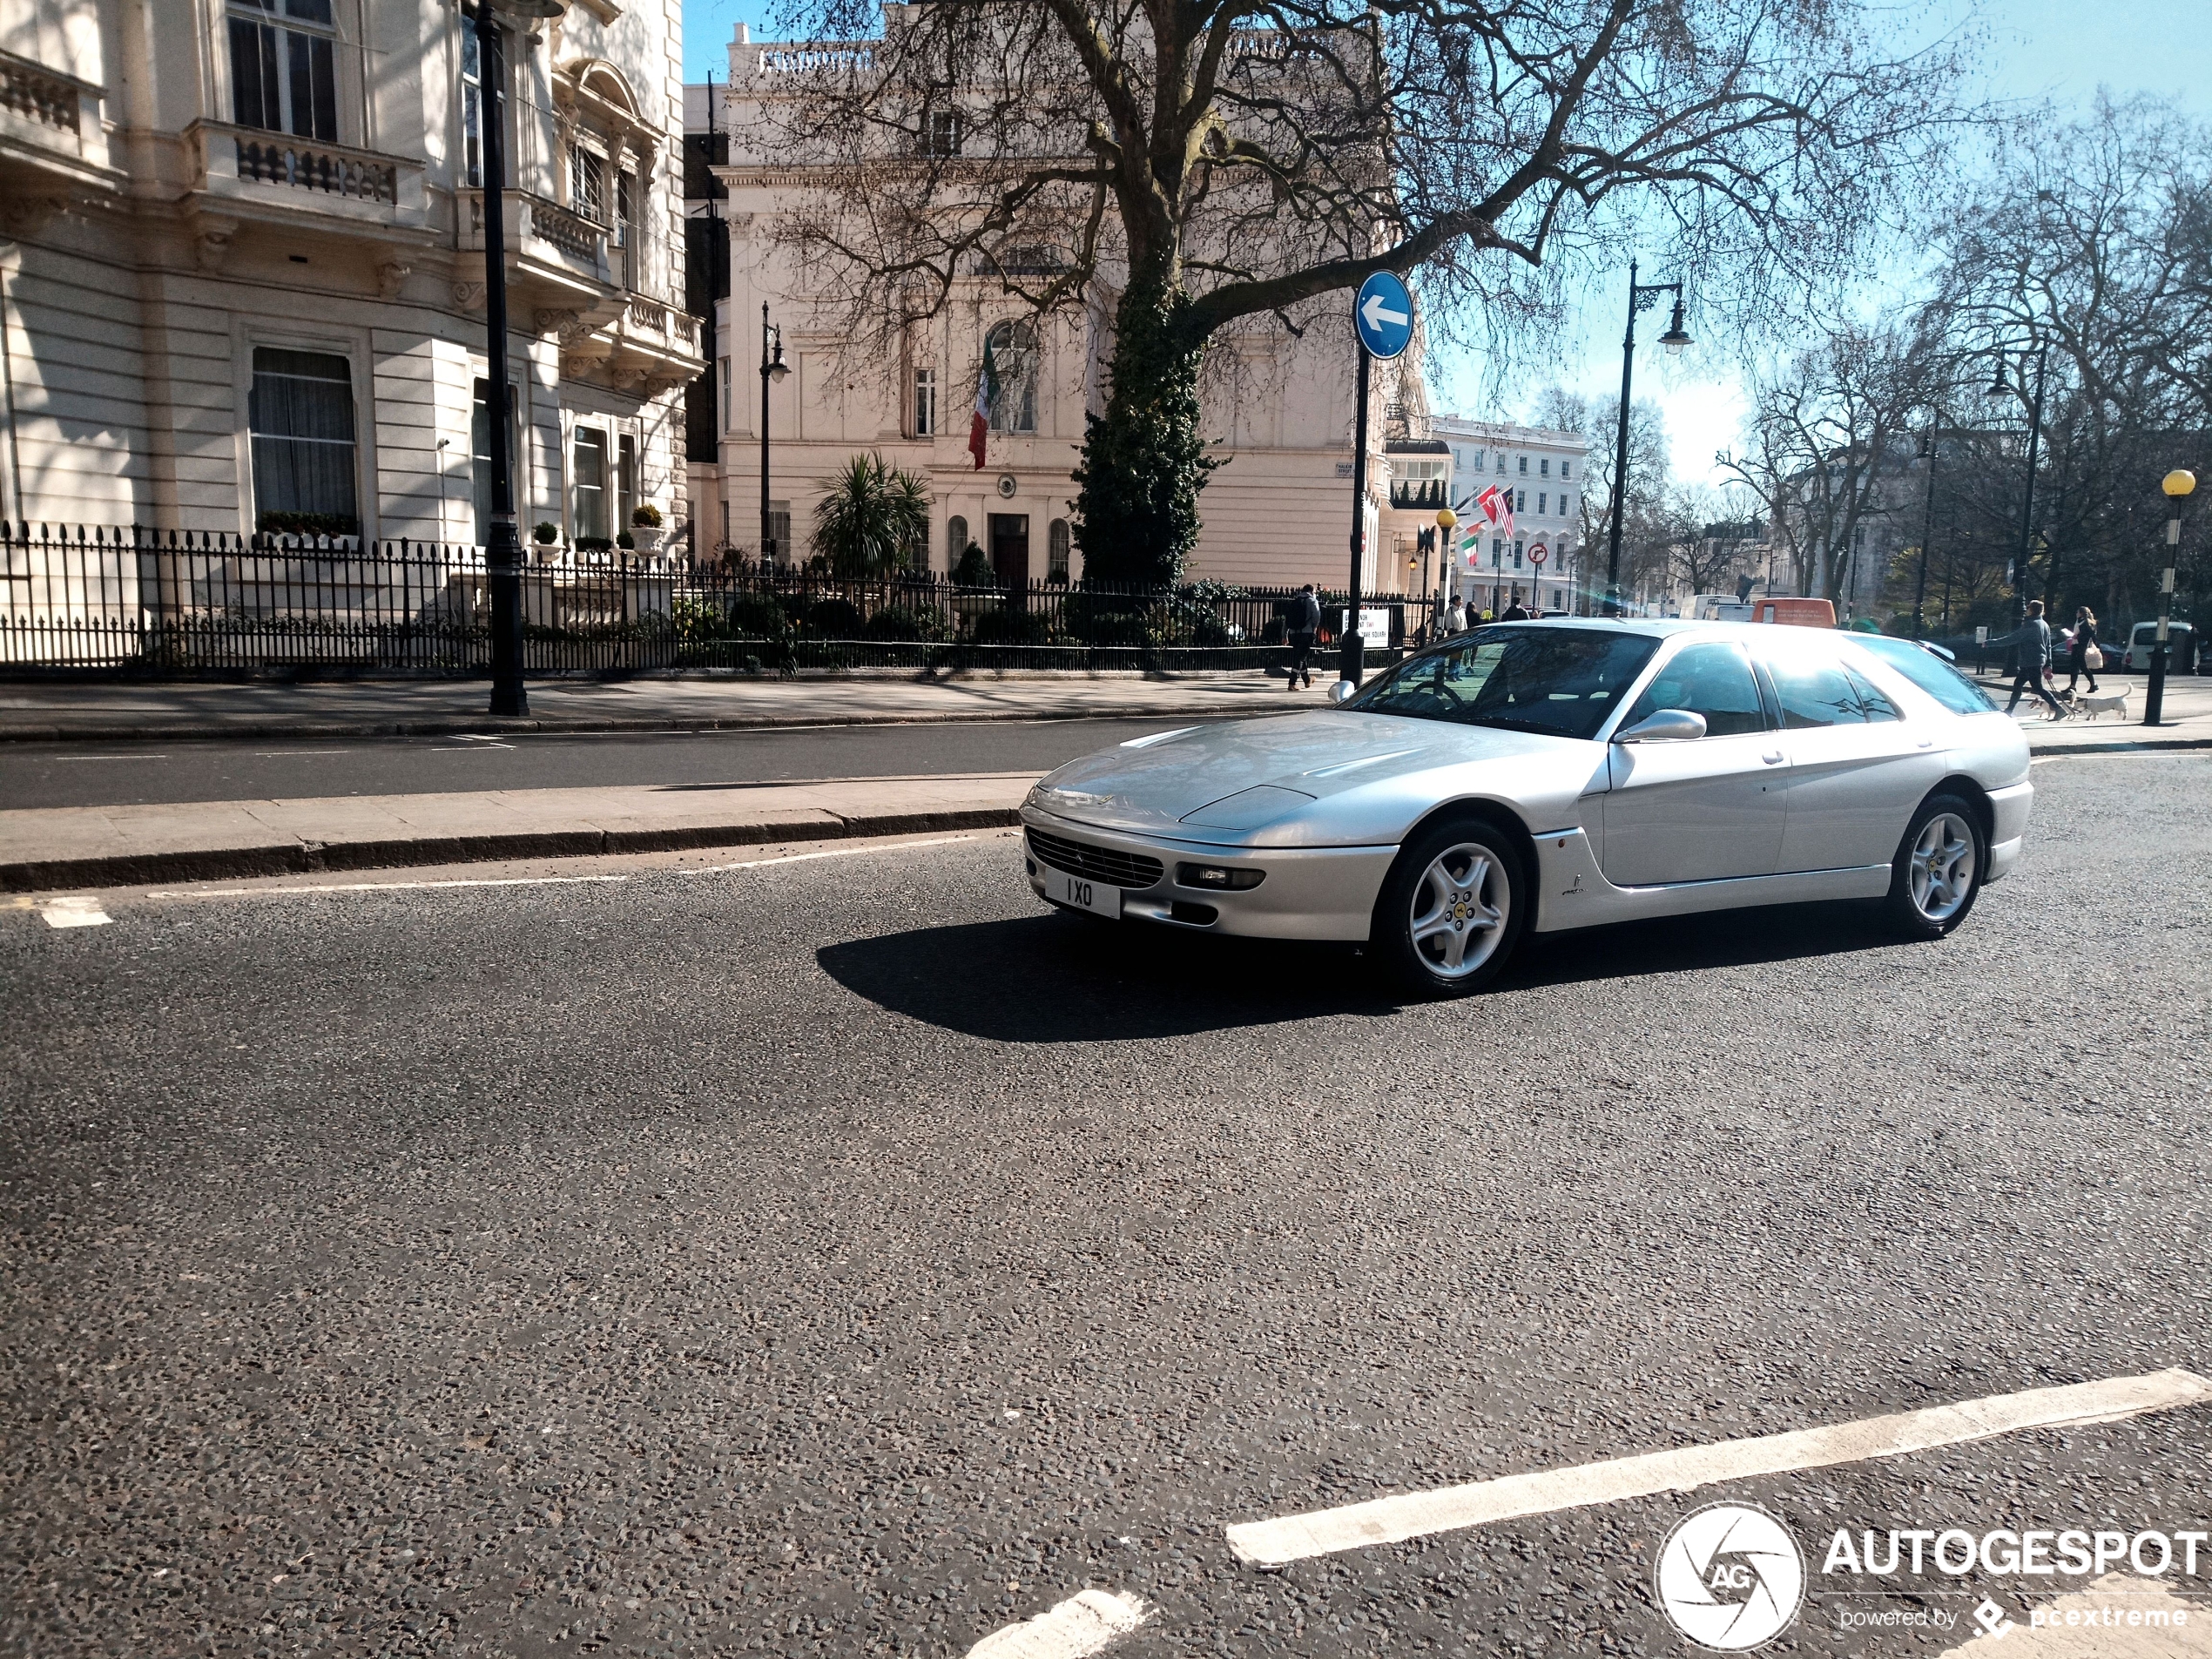 Ferrari 456 GT Venice rijdt nog altijd rond door Londen